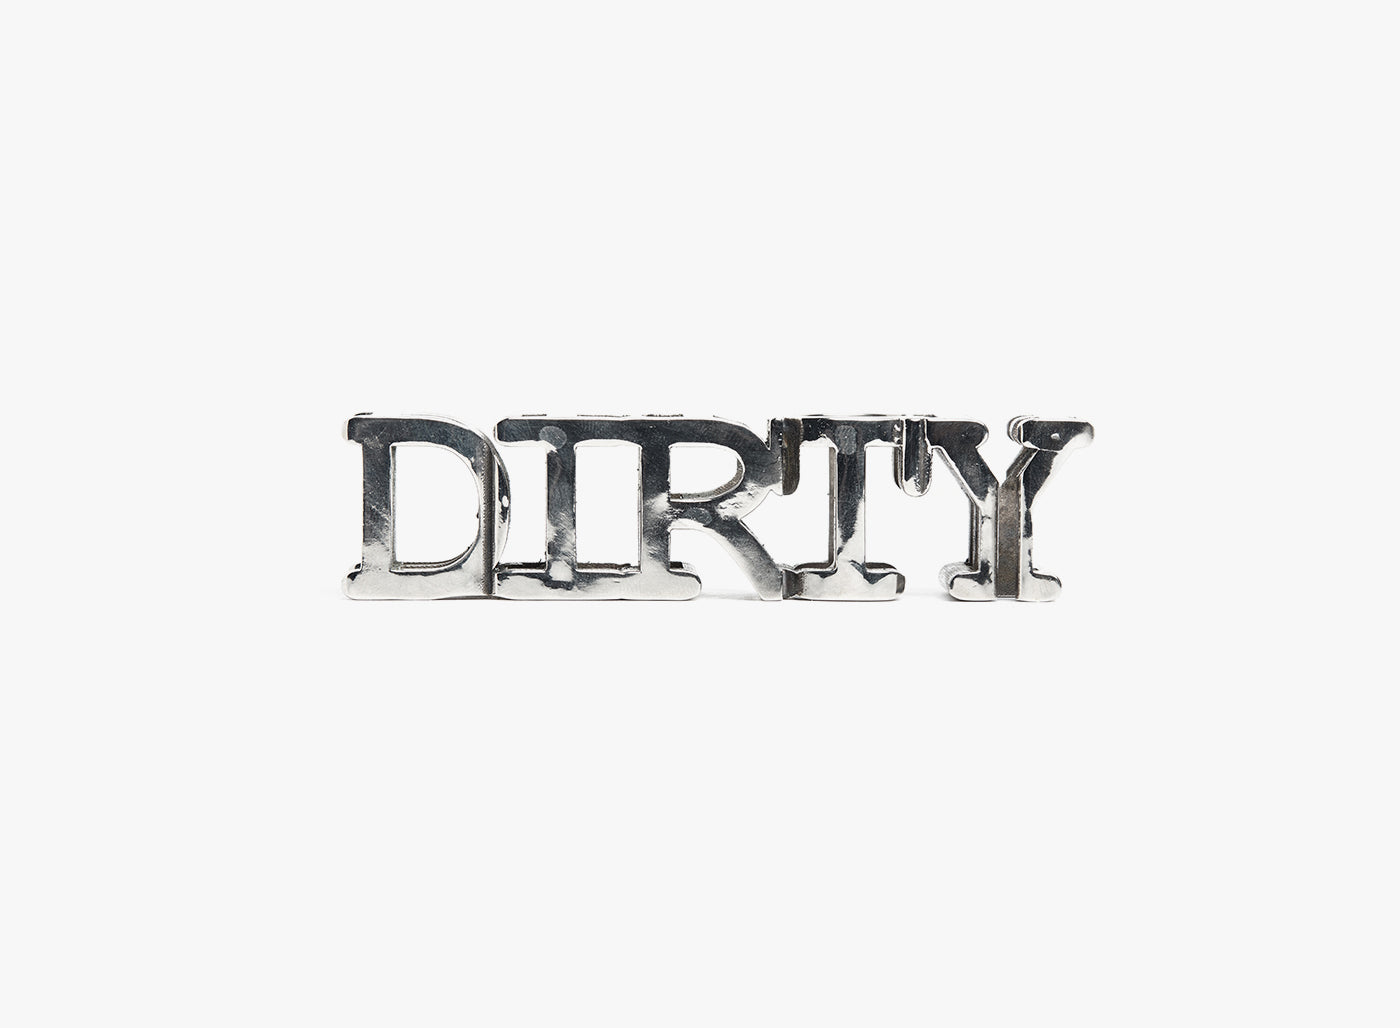 Dirty Bitch Object